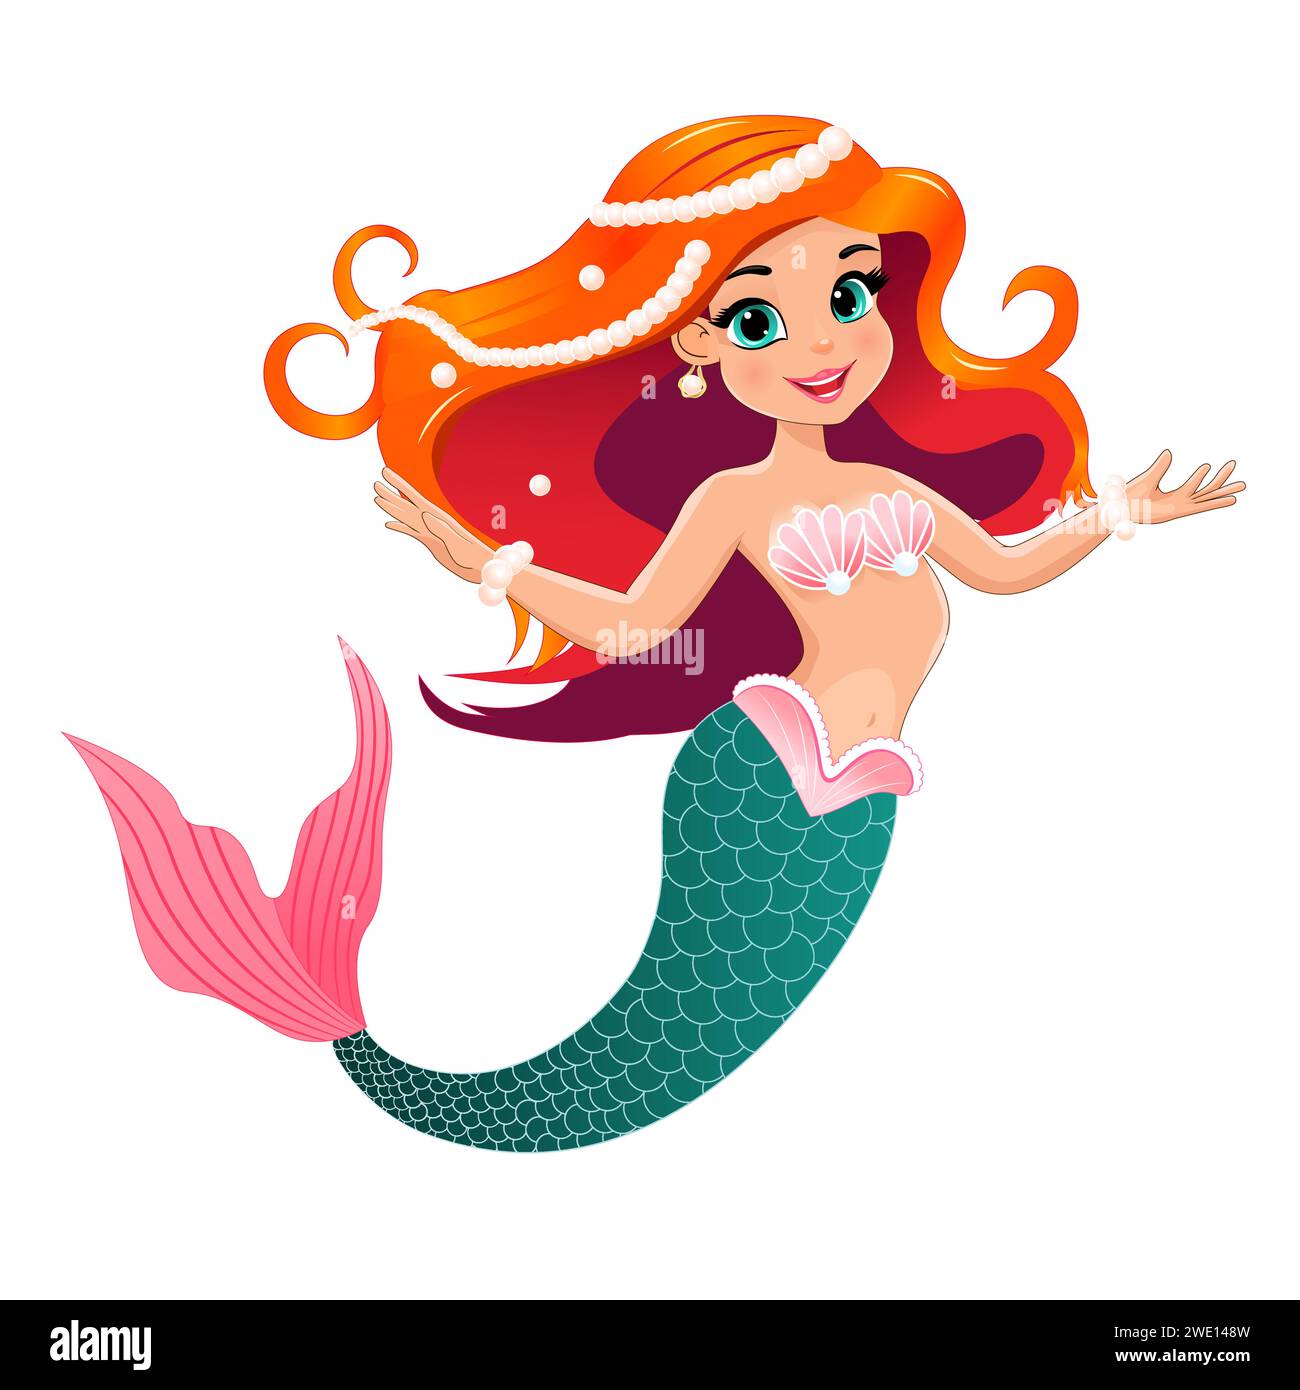 Cartoon kleine schöne Meerjungfrau mit roten Haaren, die mit Perlen verziert sind. Meerjungfrau auf weißem Hintergrund. Stock Vektor